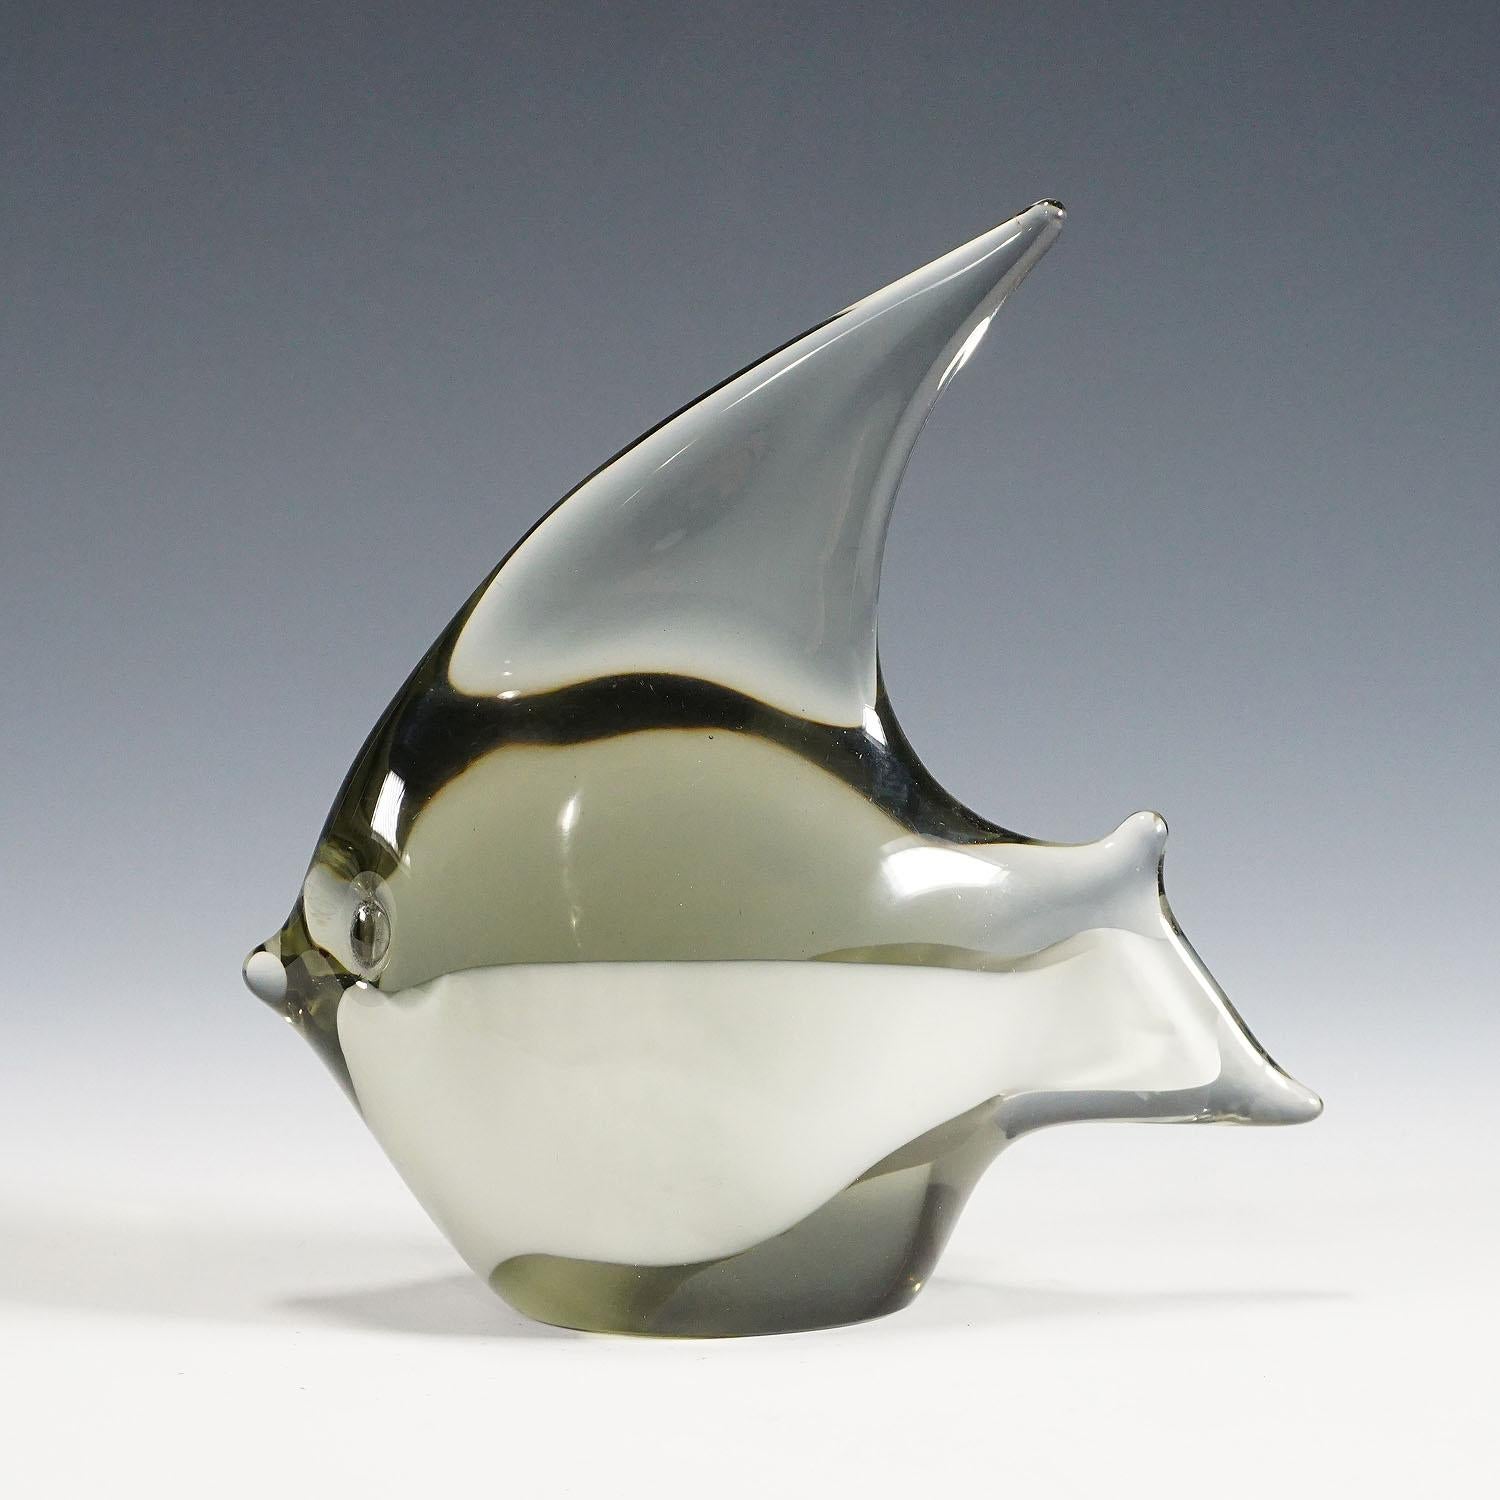 Sculpture d'un poisson stylisé en verre gris fumé avec bandeau en verre blanc. Fabriqué à la main dans la manufacture de verre Gral, en Allemagne. Conçu par Livio Seguso vers 1970. Signature incisée de l'artiste (LS) sur la base.

Livio Seguso (*